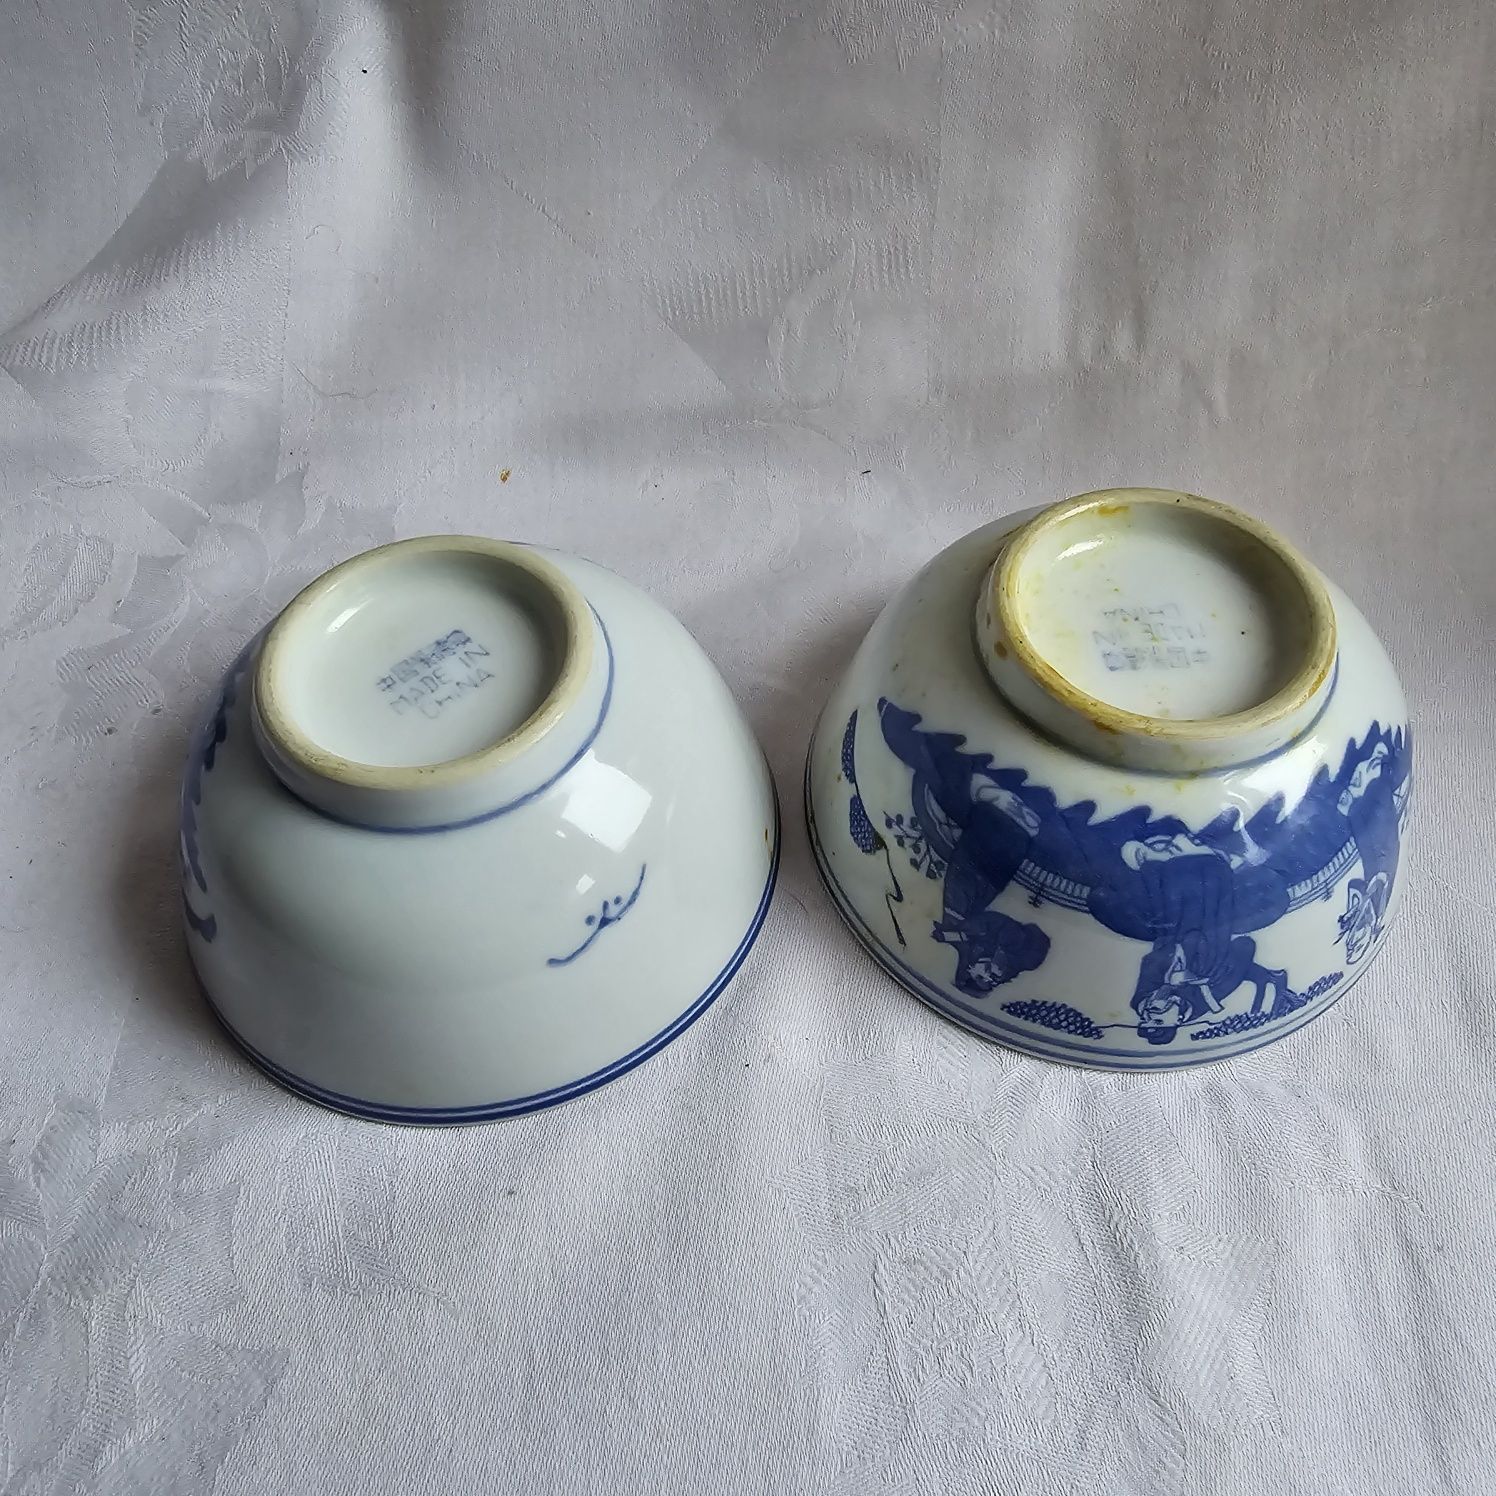 2x Chińskie miseczki porcelana zdobiona fajans 11,5cm x 5.5cm